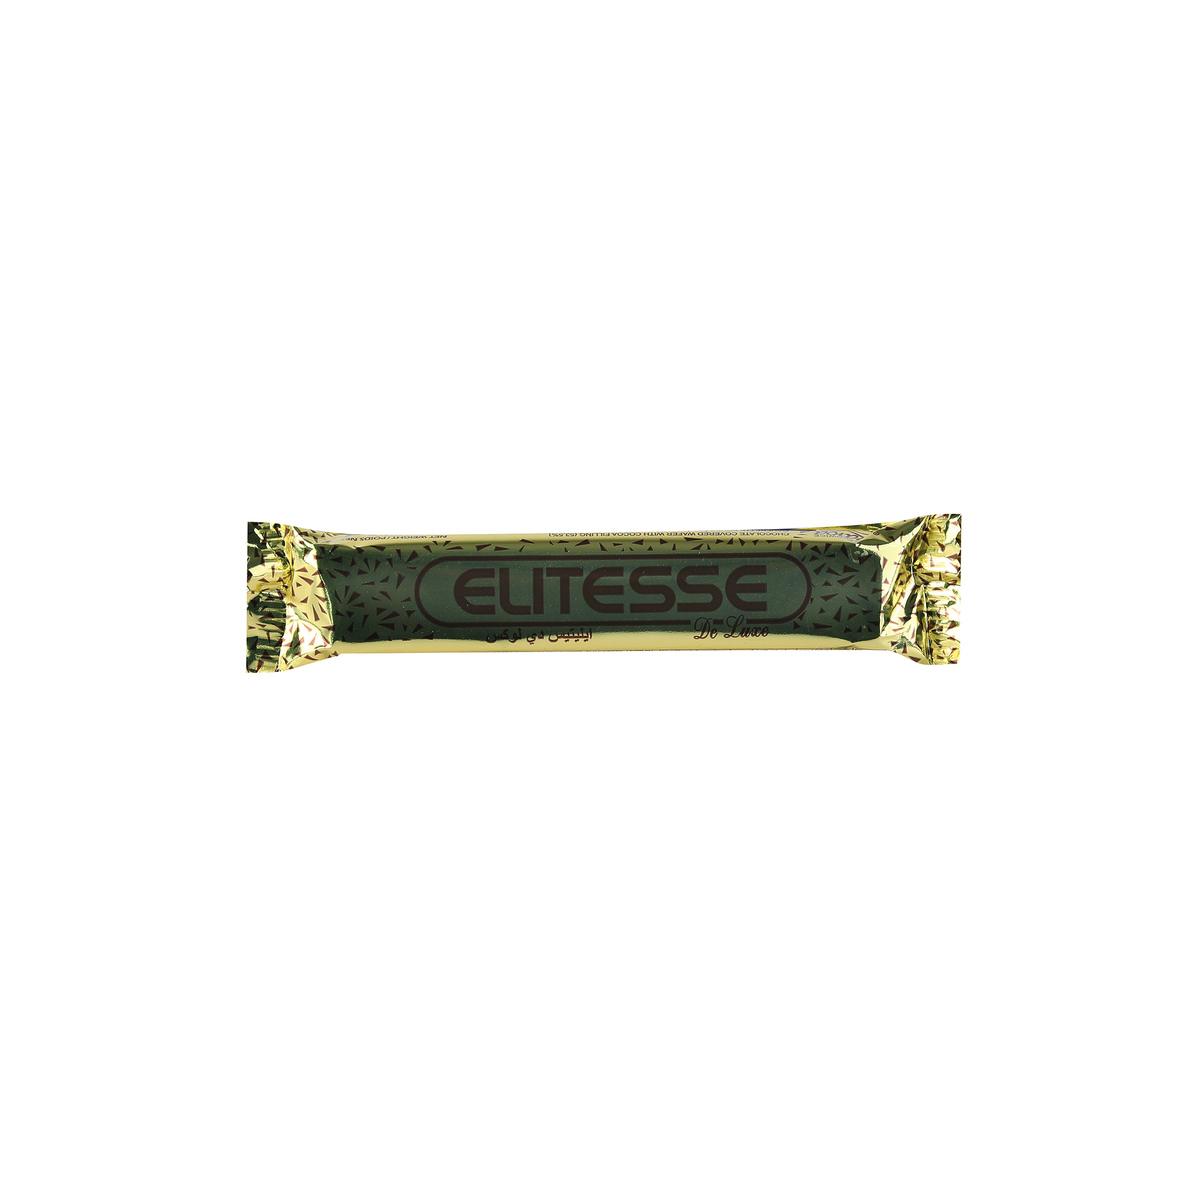 Elitesse Chocolate Coated Wafer 40 x 20g